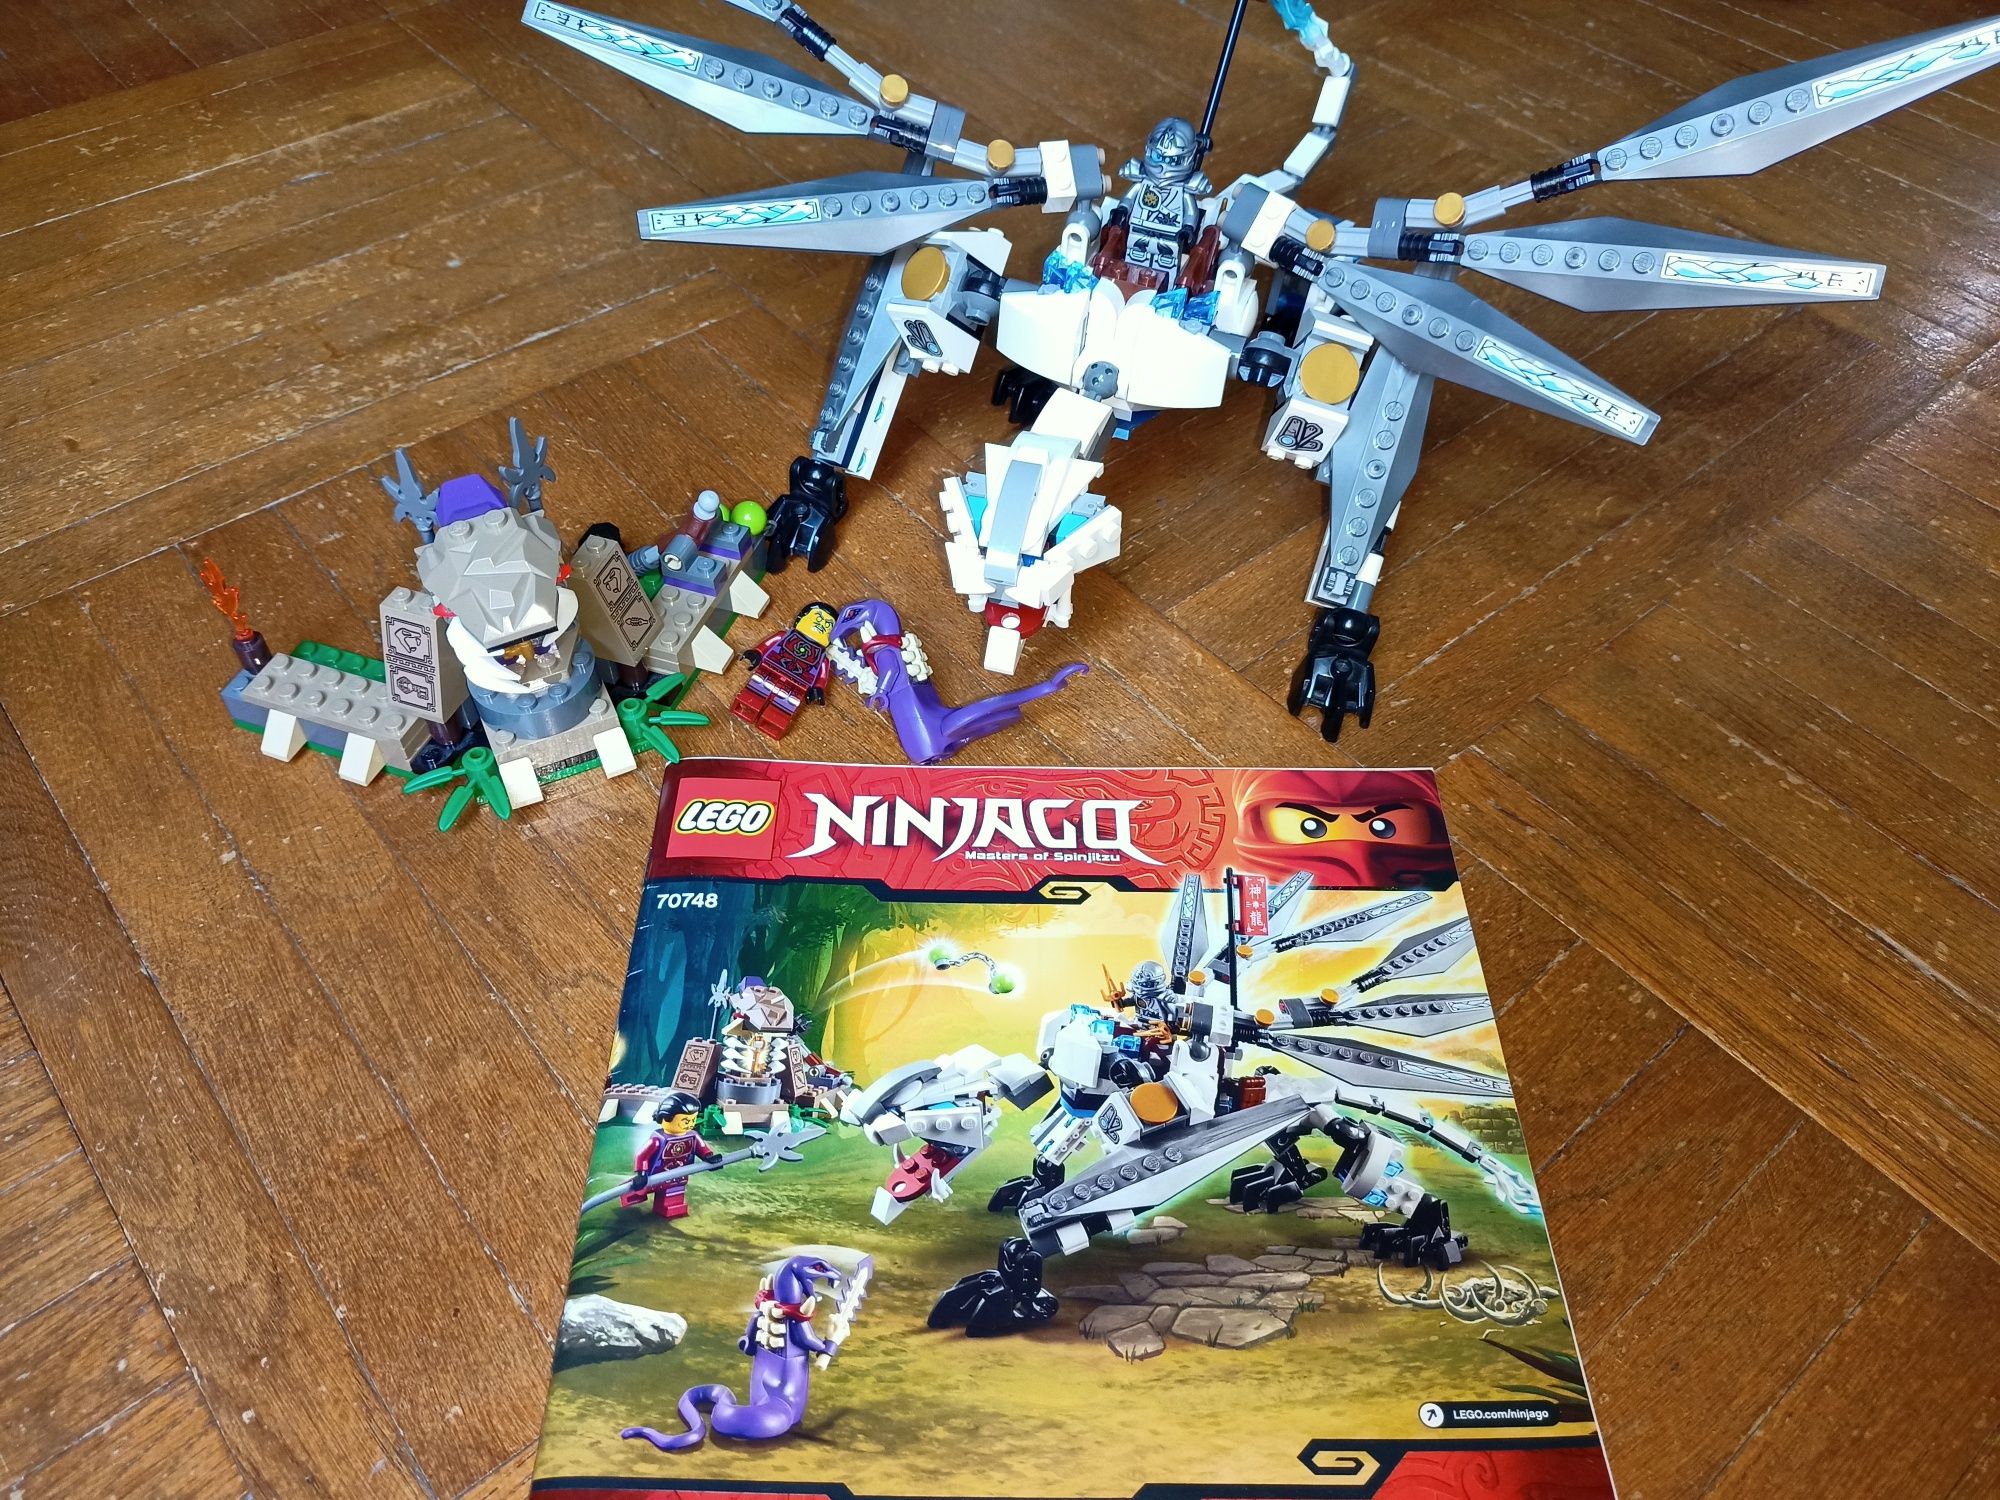 LEGO Ninjago 70748